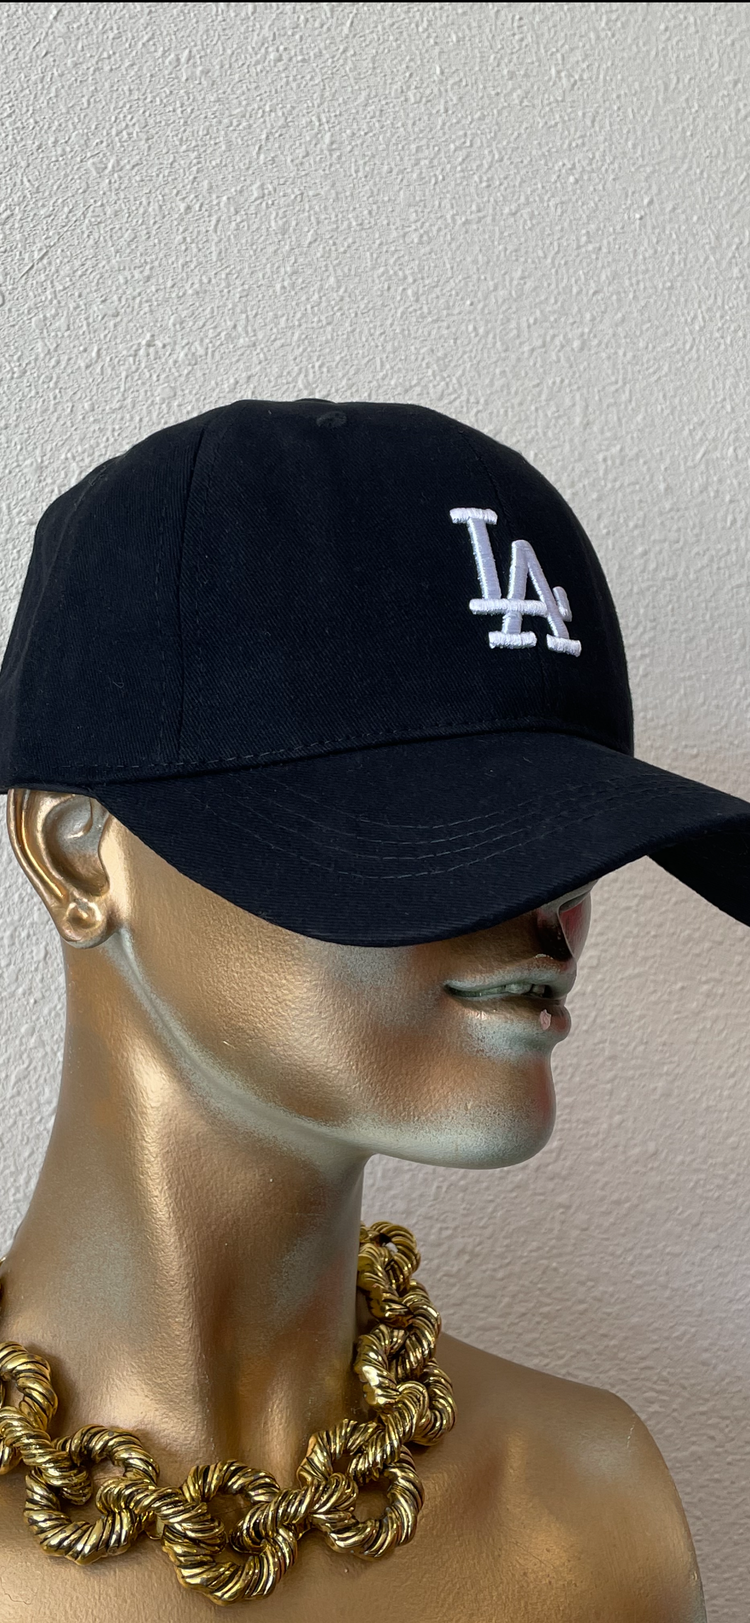 LA Baseball Cap (2 colors)